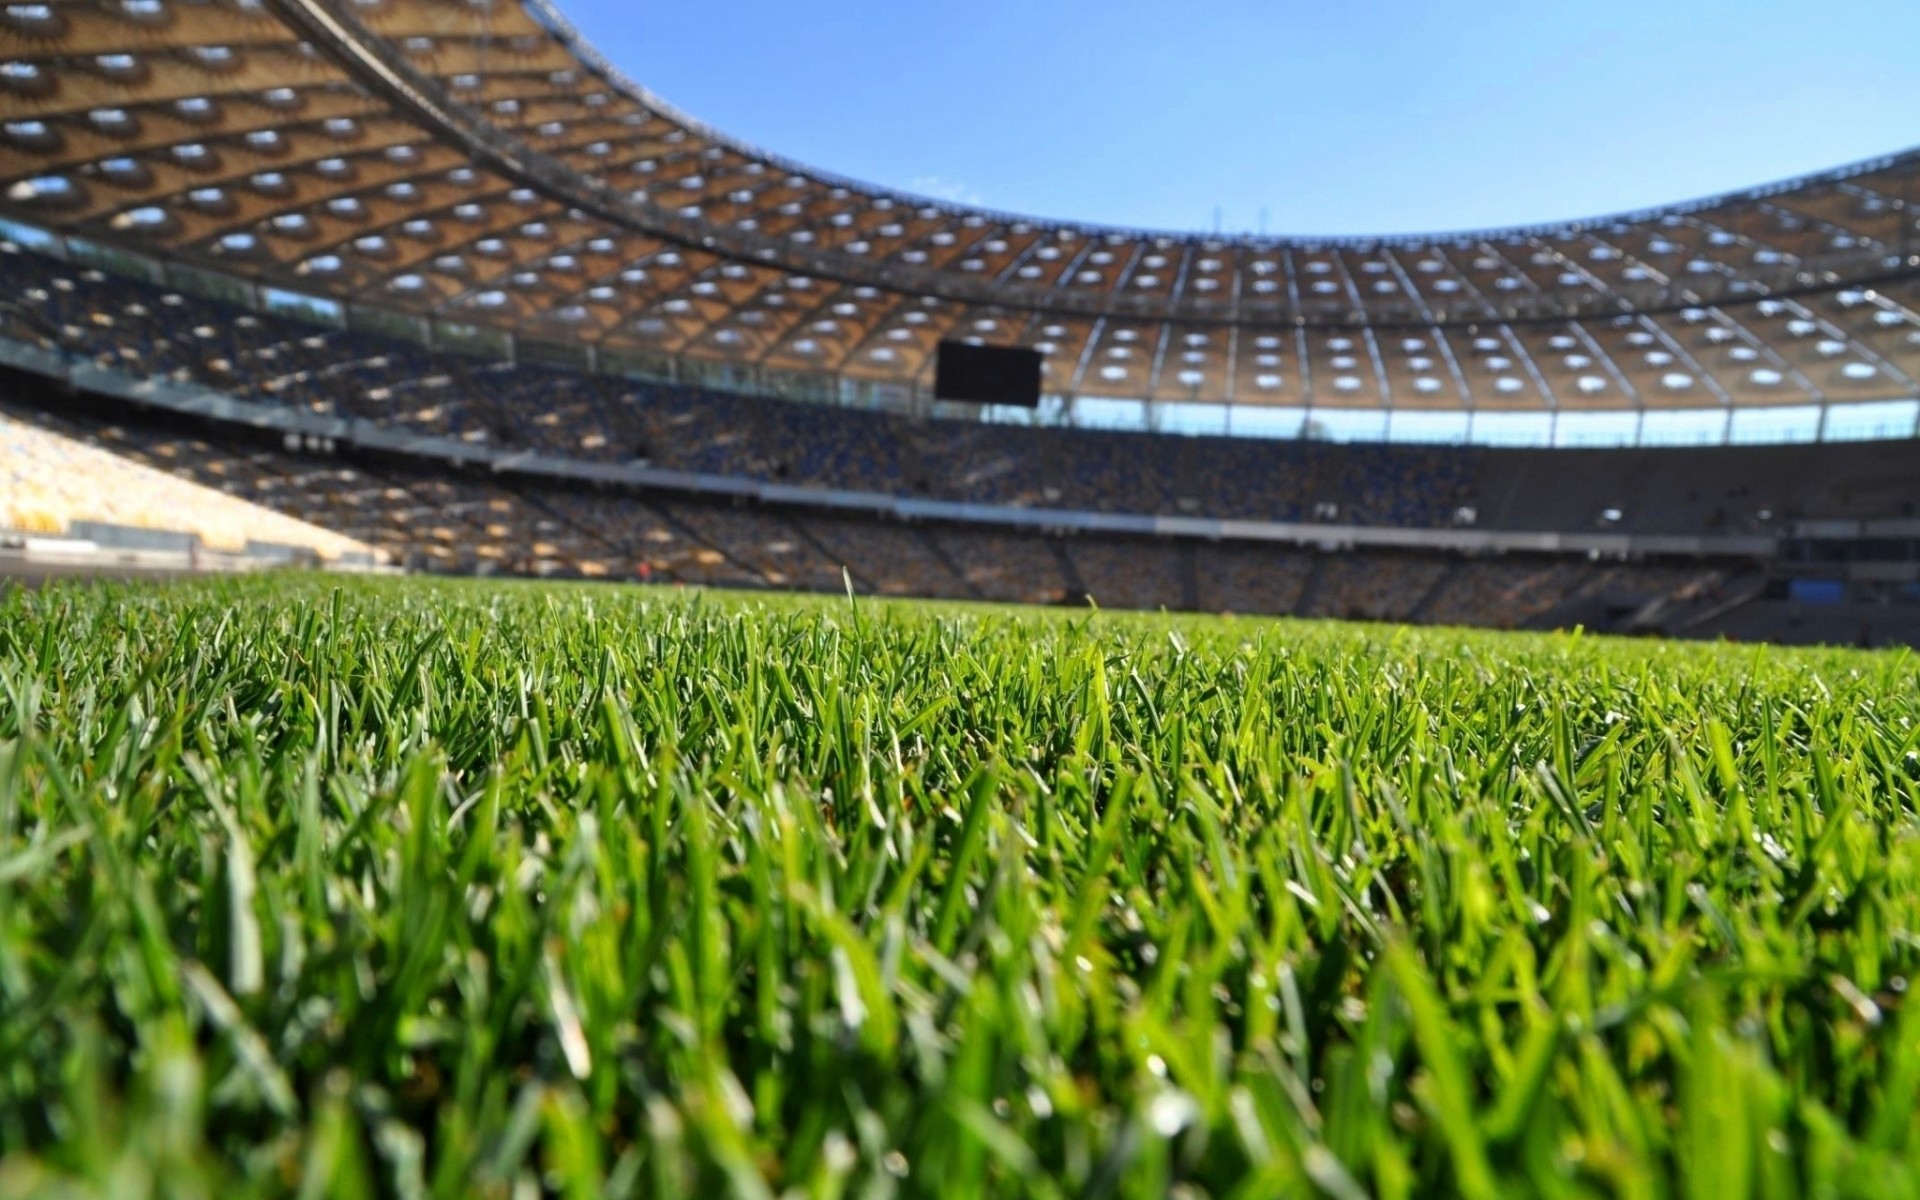 soccer field wallpaper,sport venue,stadium,grass,lawn,soccer specific stadium